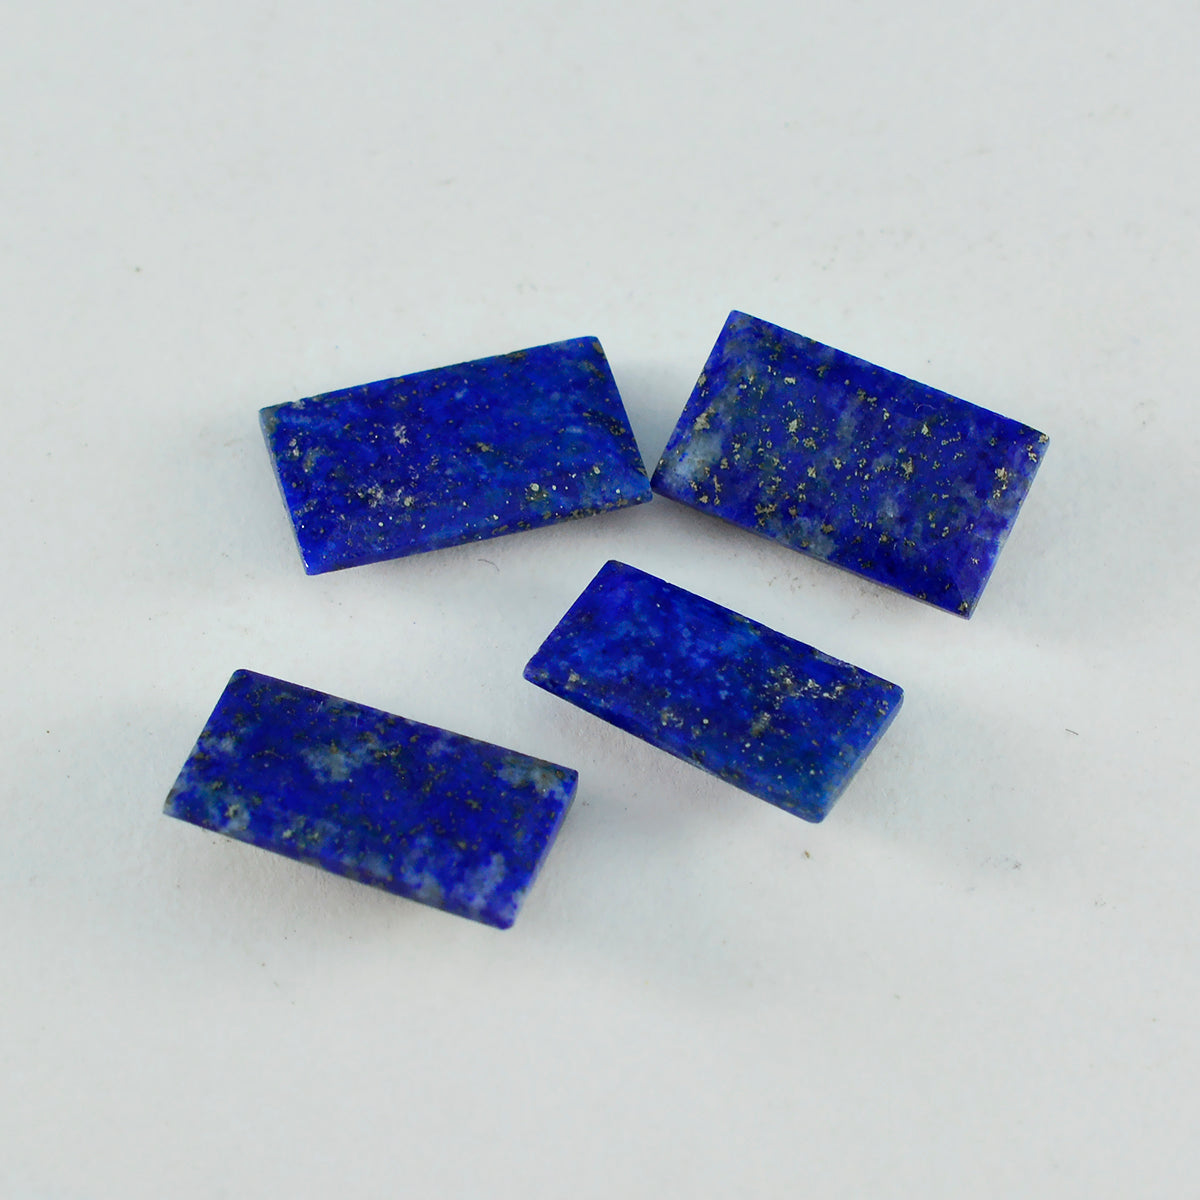 Riyogems 1 Stück echter blauer Lapislazuli, facettiert, 5 x 10 mm, Baguette-Form, Edelstein von fantastischer Qualität